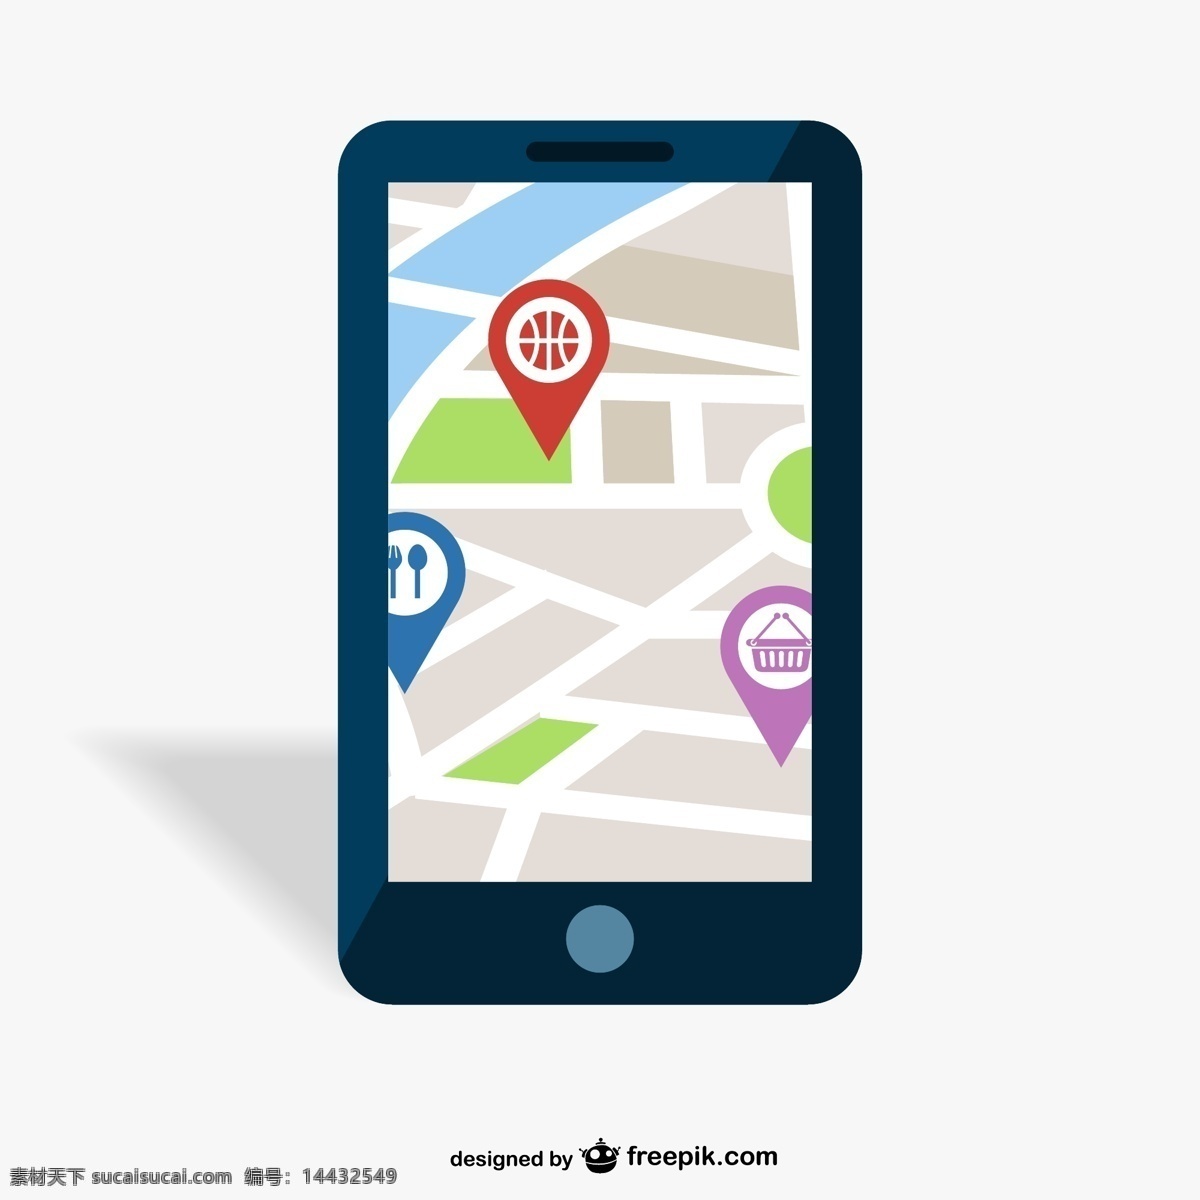 gps 手机 应用 旅游 城市 图标 电话 地图 模板 道路 移动 互联网 平板 苹果 智能手机 数码 手机图标 交通 应用程序 平面设计 网络 白色